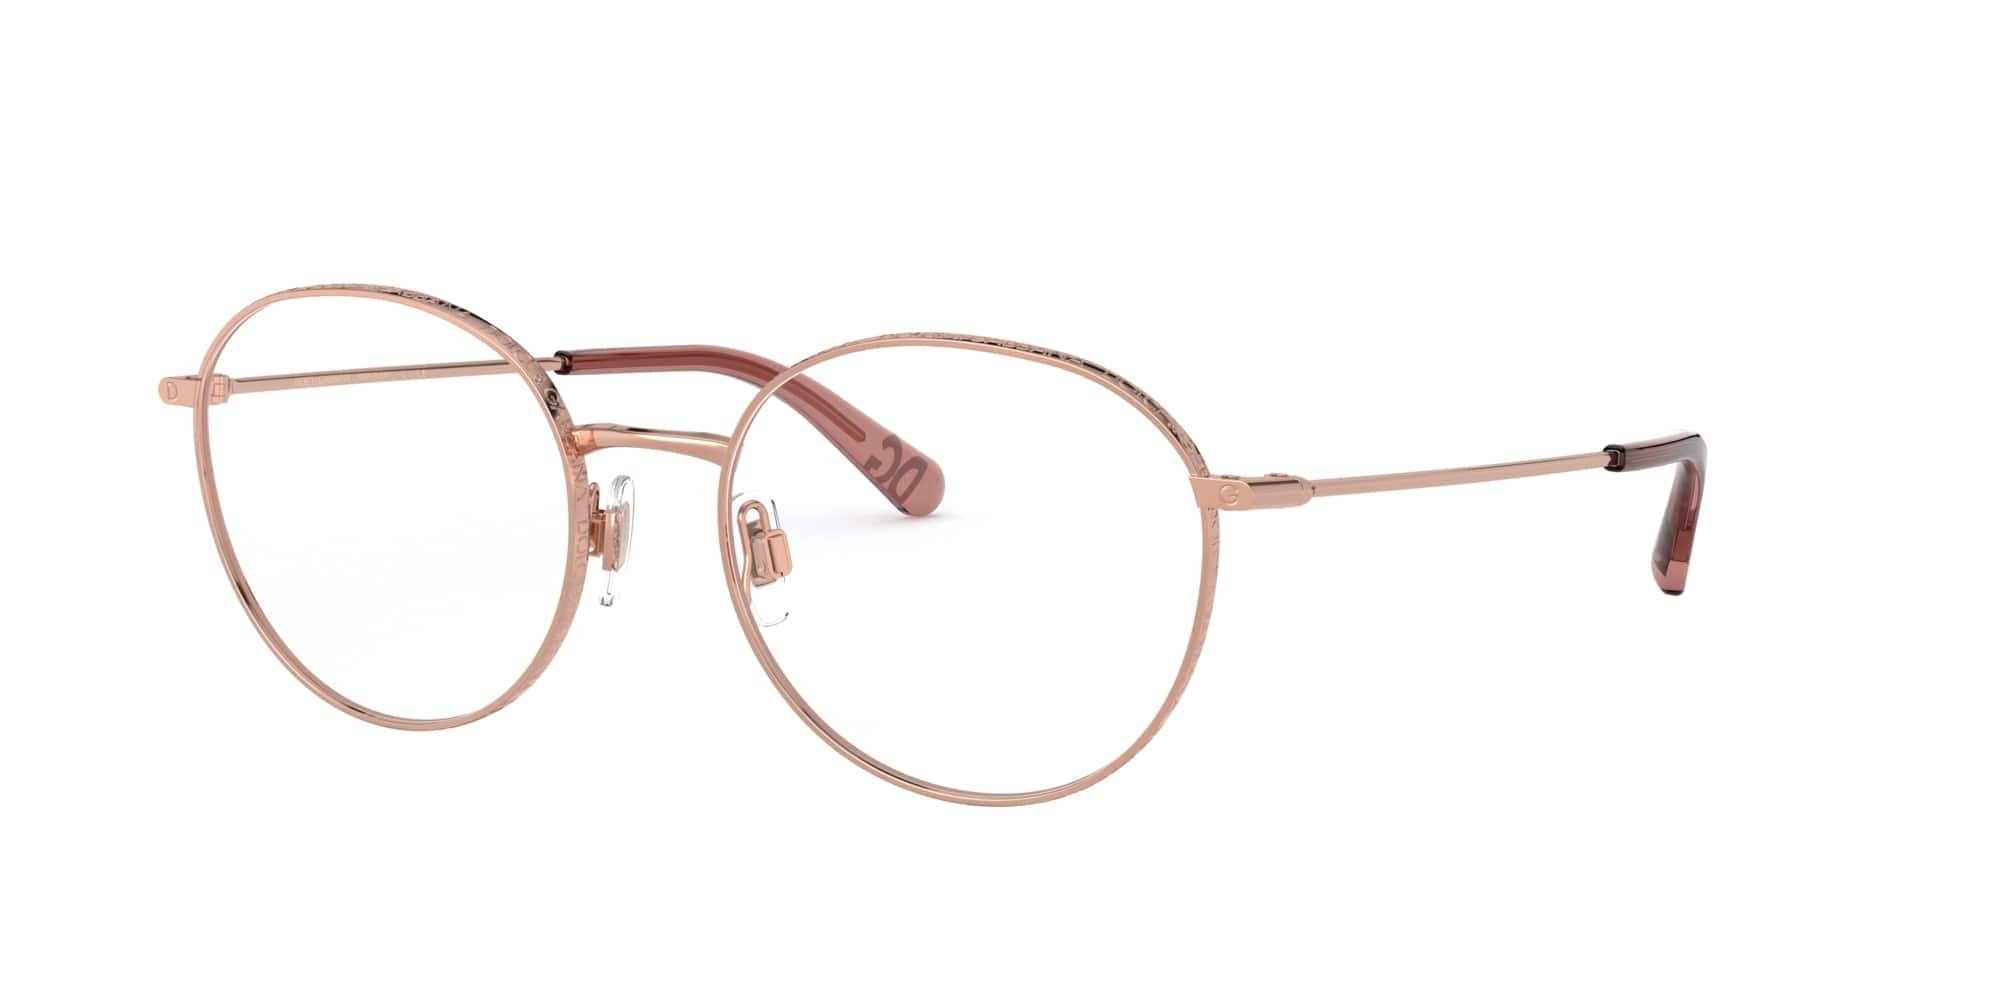 Das Bild zeigt die Korrektionsbrille DG1322 1298 von der Marke D&G in rosegold.